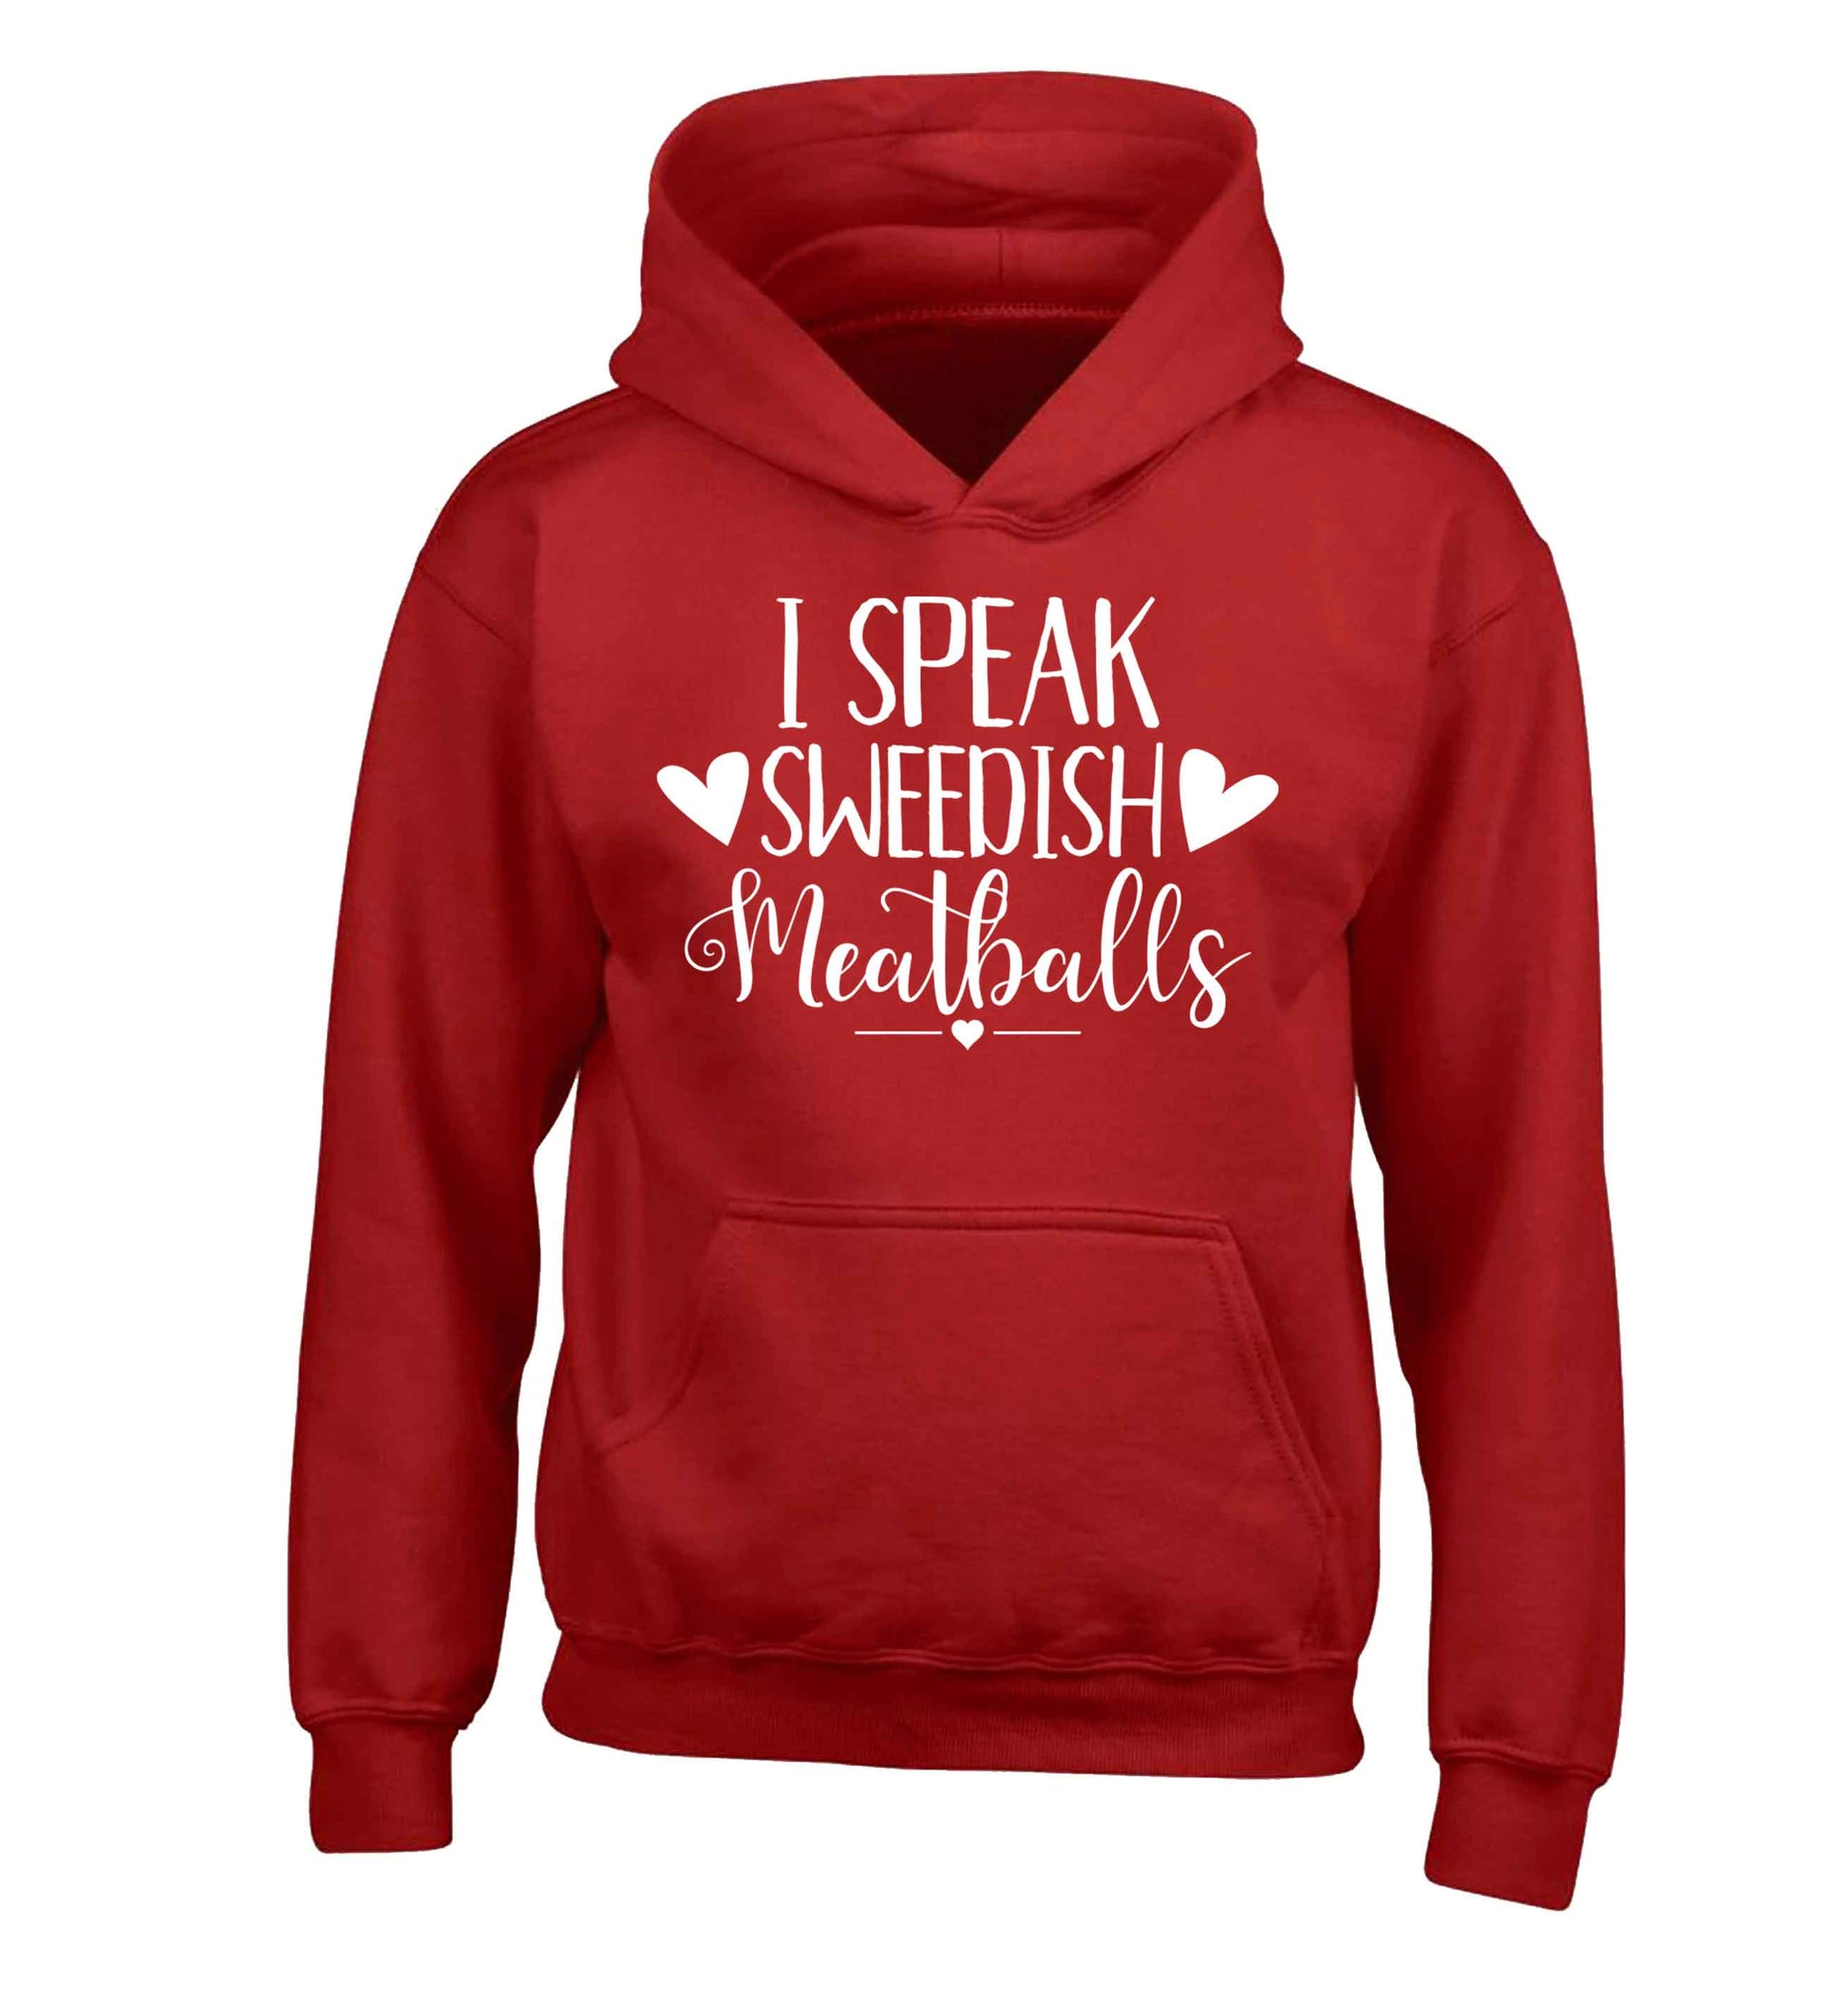 I speak sweedish...meatballs children's red hoodie 12-13 Years